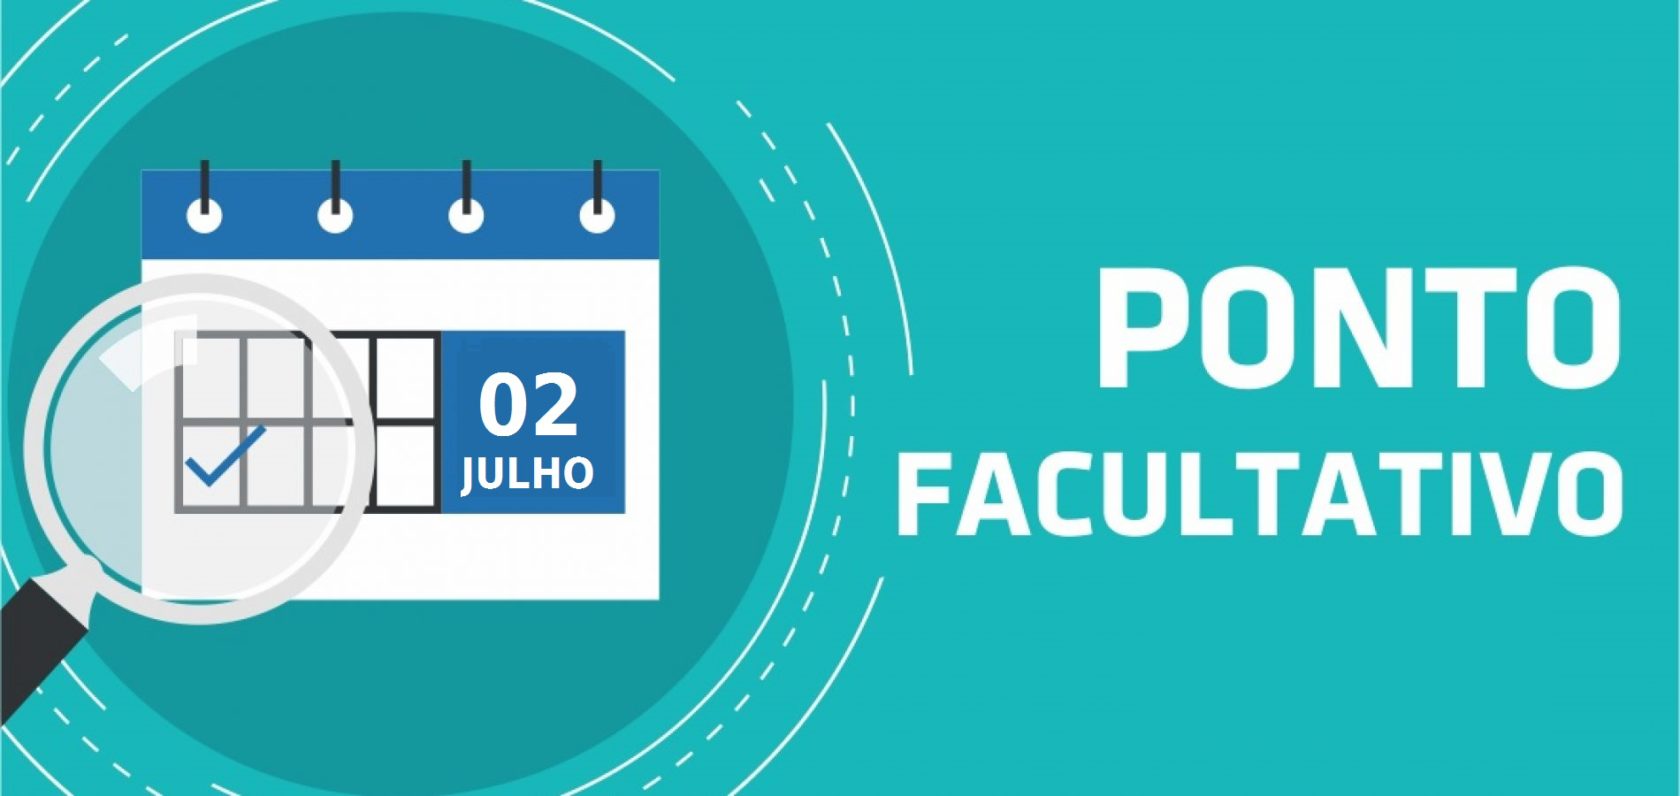 Prefeitura de Itararé (SP) decreta ponto facultativo na próxima segunda-feira (02)